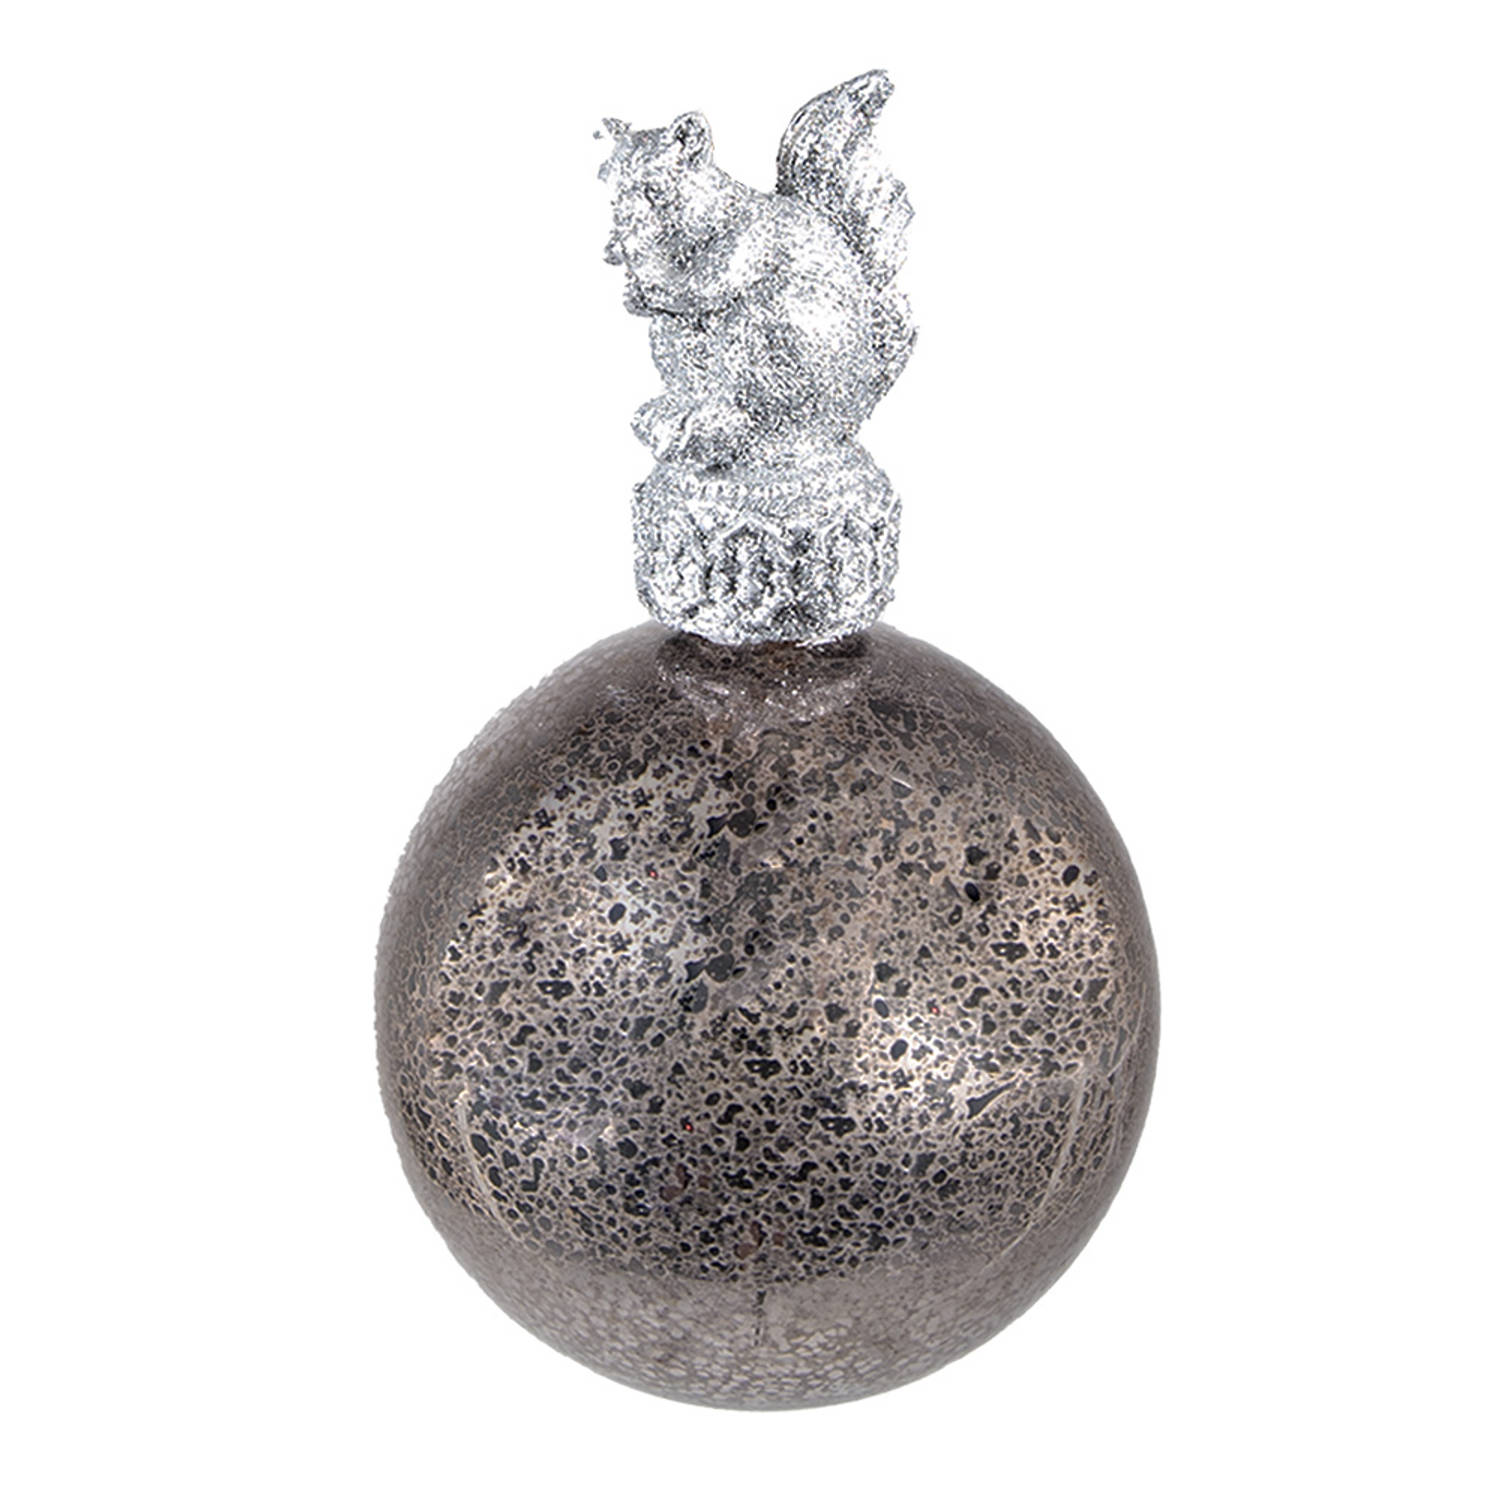 HAES DECO - Kerstbal - Formaat Ø 7x13 cm - Kleur Zilverkleurig - Materiaal Glas / Polyresin - Kerstversiering, Kerstdecoratie, Decoratie Hanger, Kerstboomversiering